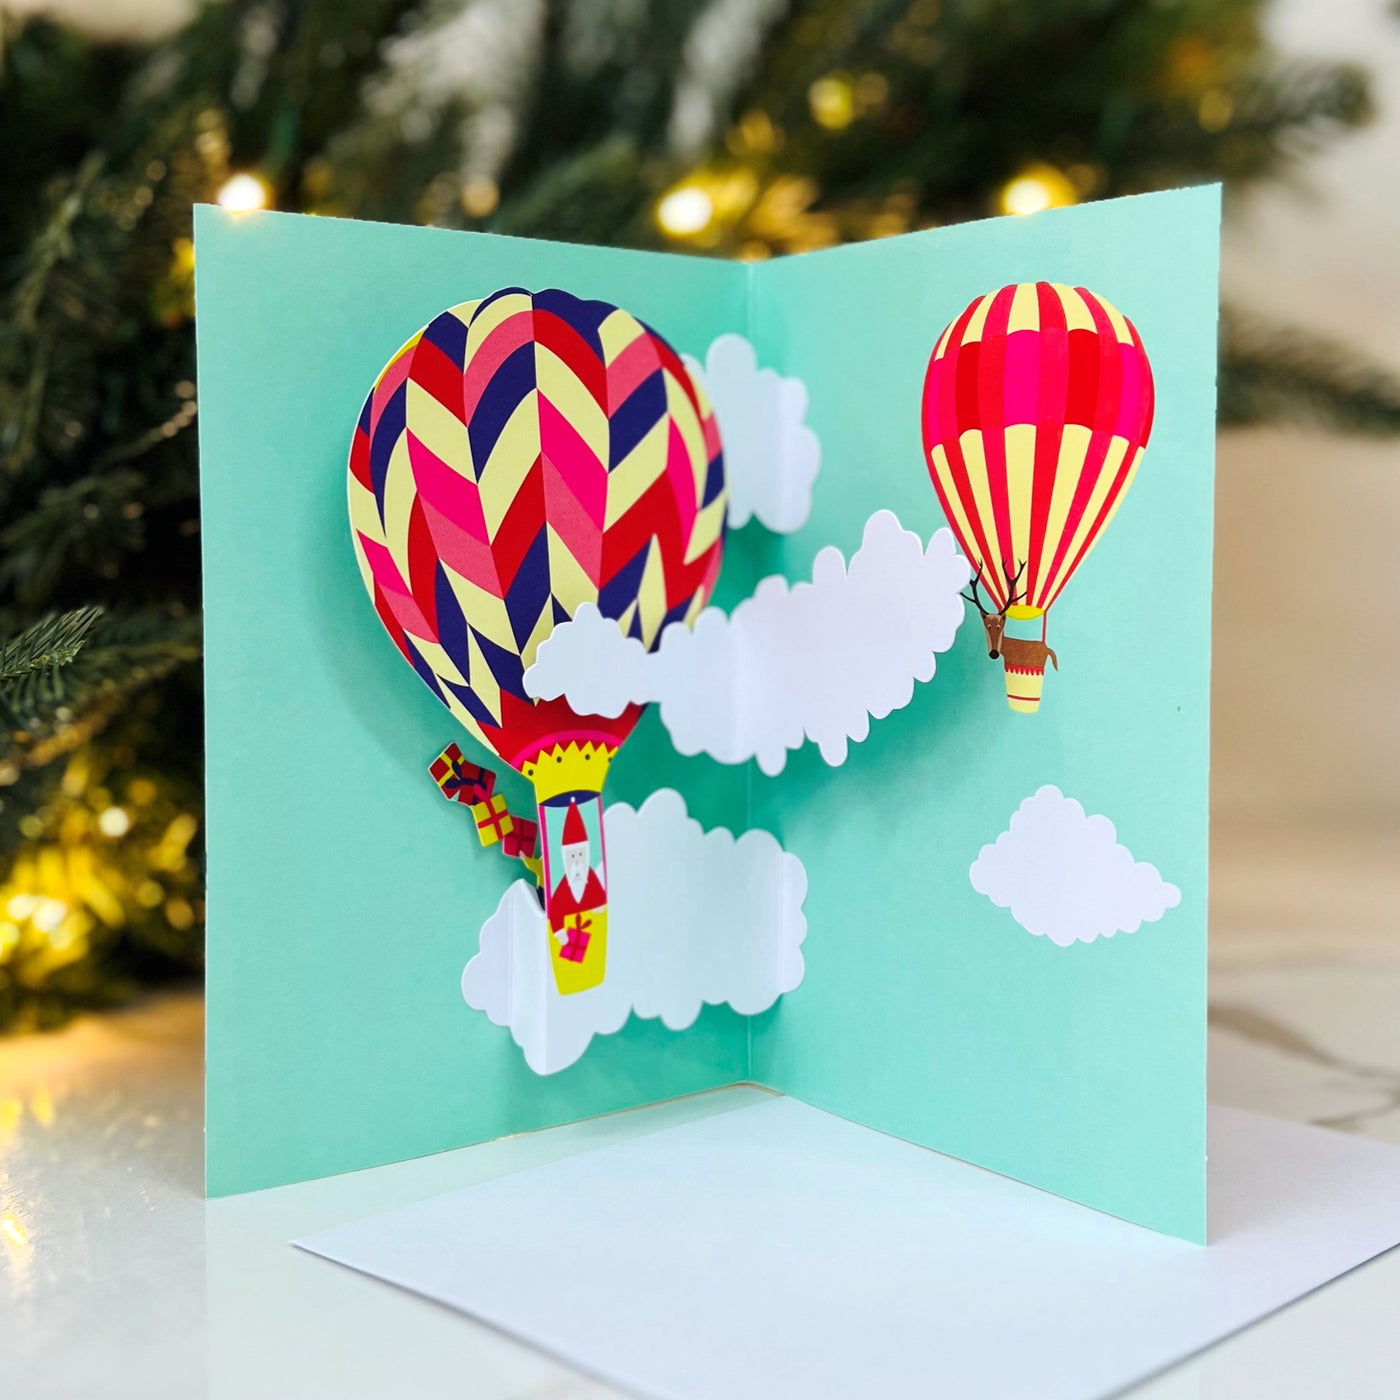 Moma Pop-Up Christmas Card - Hot Air Balloon